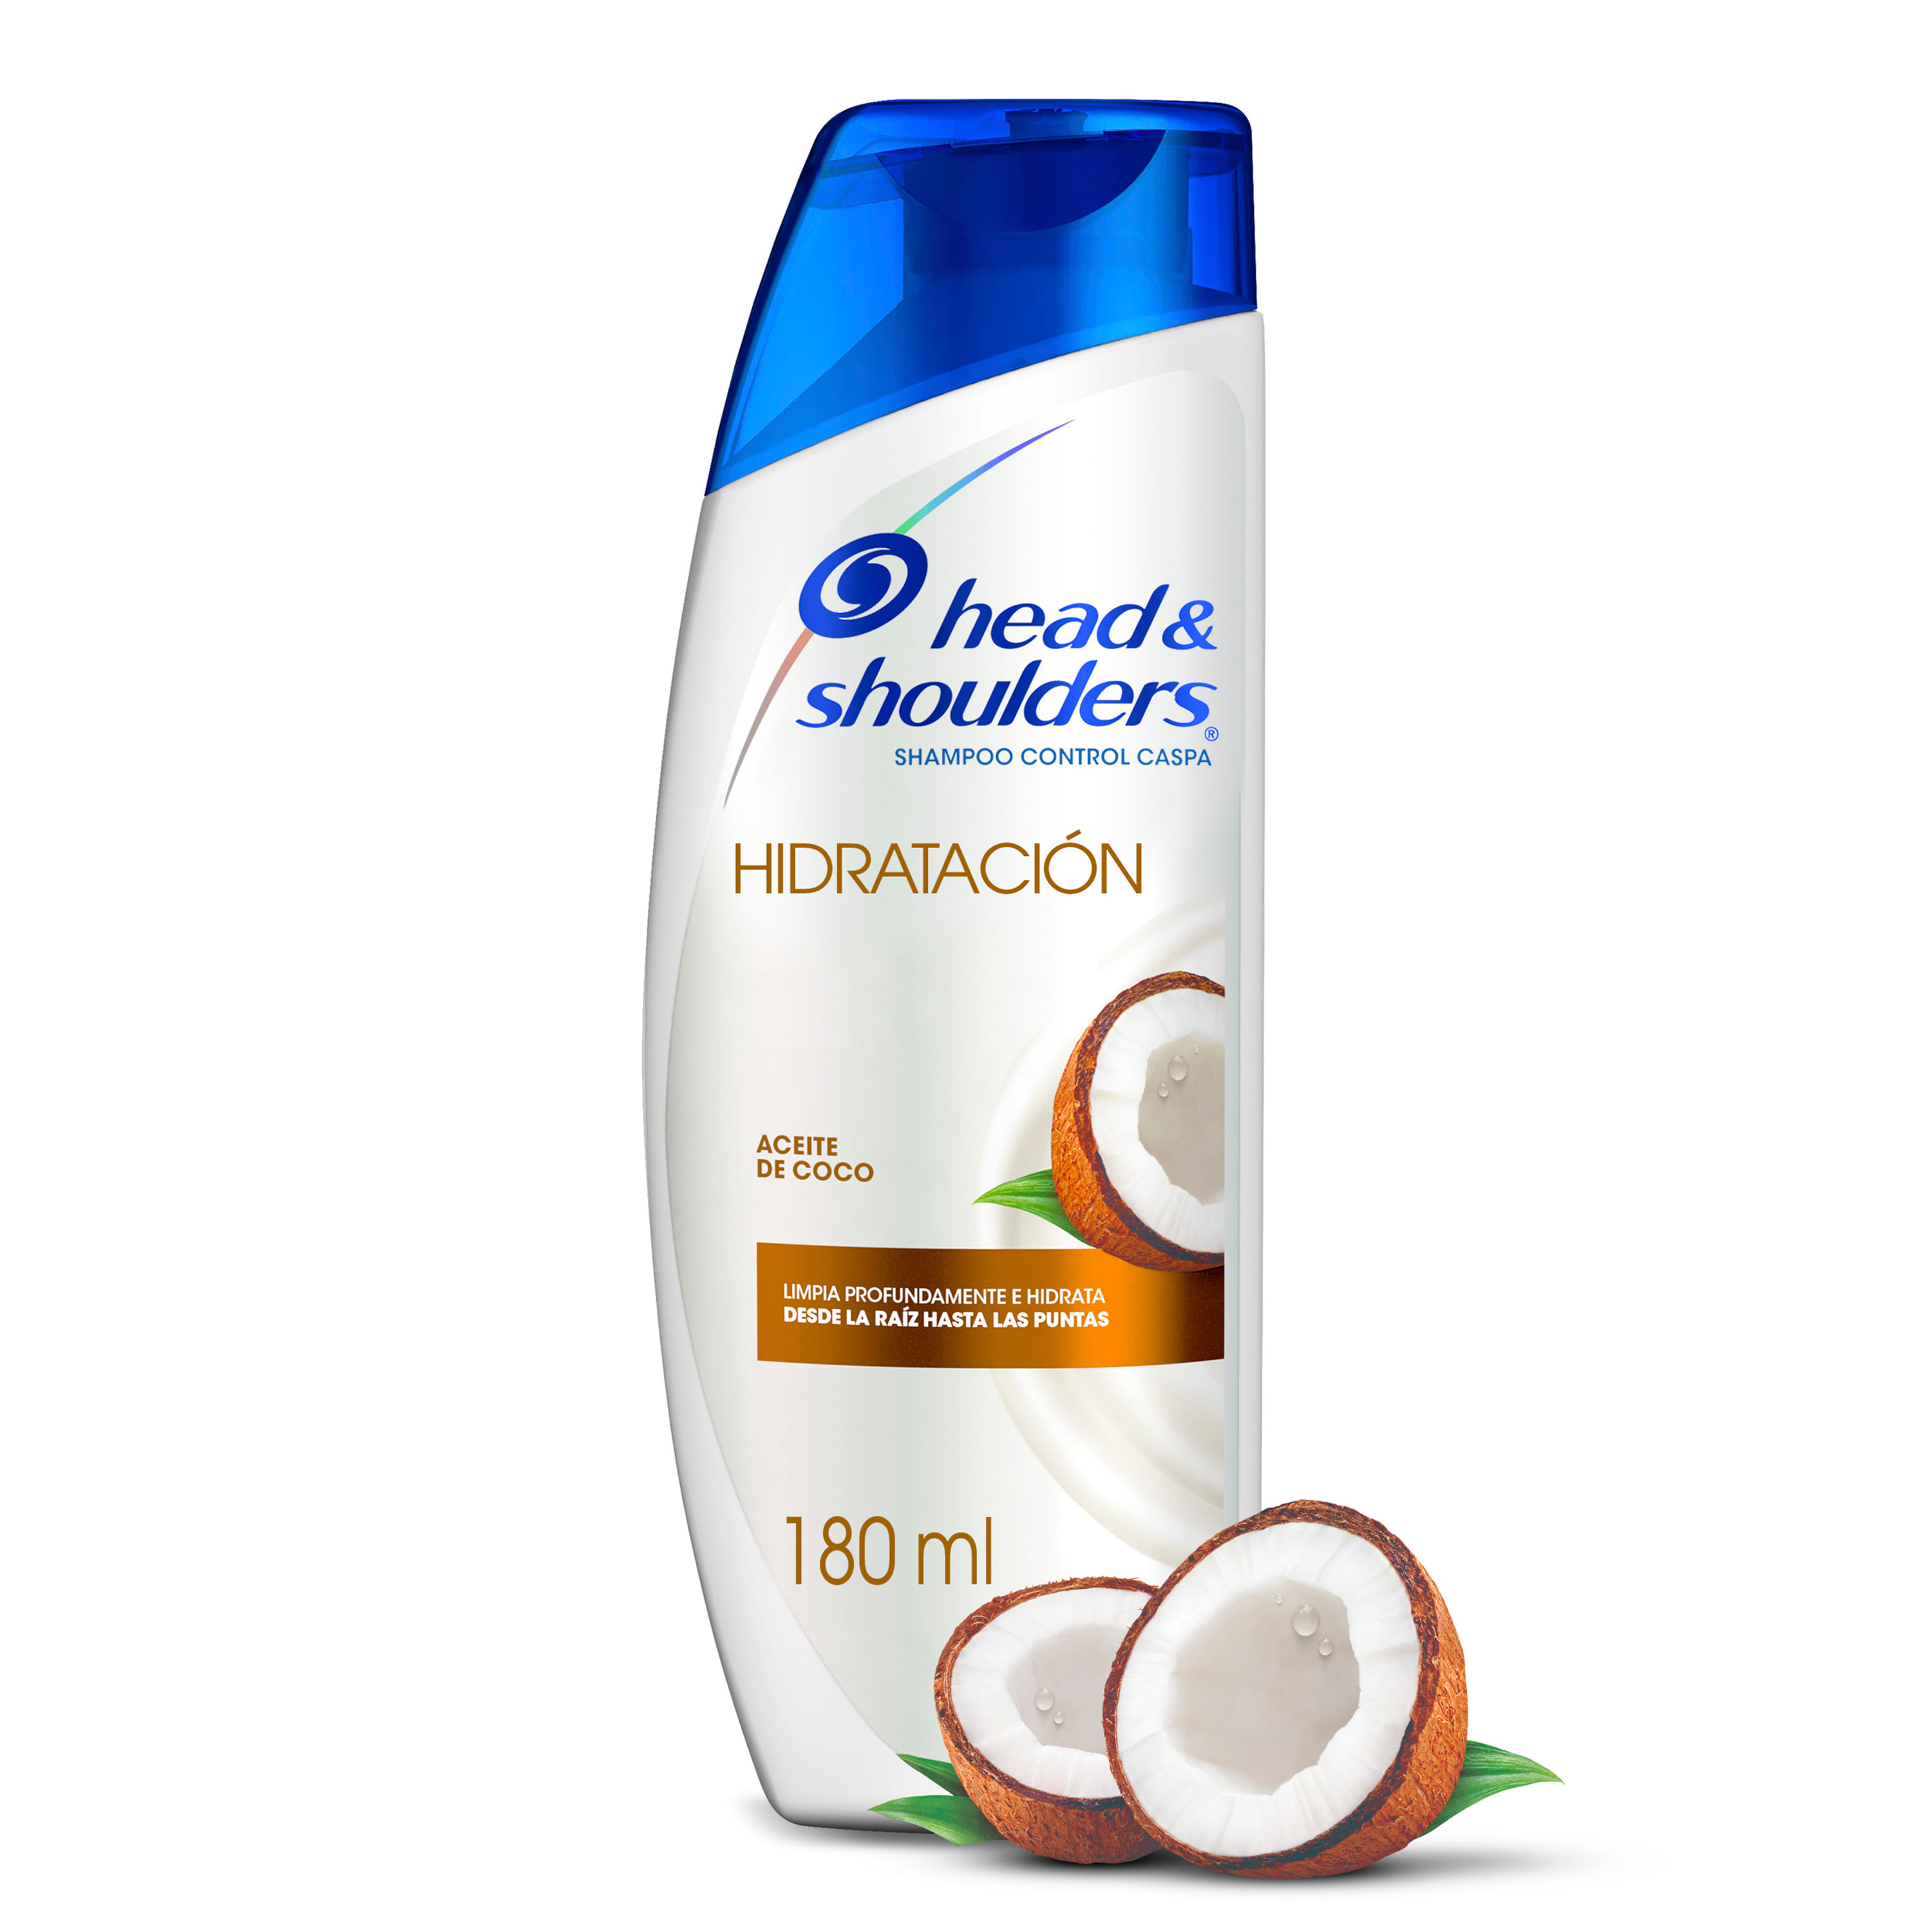 Shampoo-Control-Caspa-Head-Shoulders-Hidrataci-n-Aceite-de-Coco-180ml-1-35248